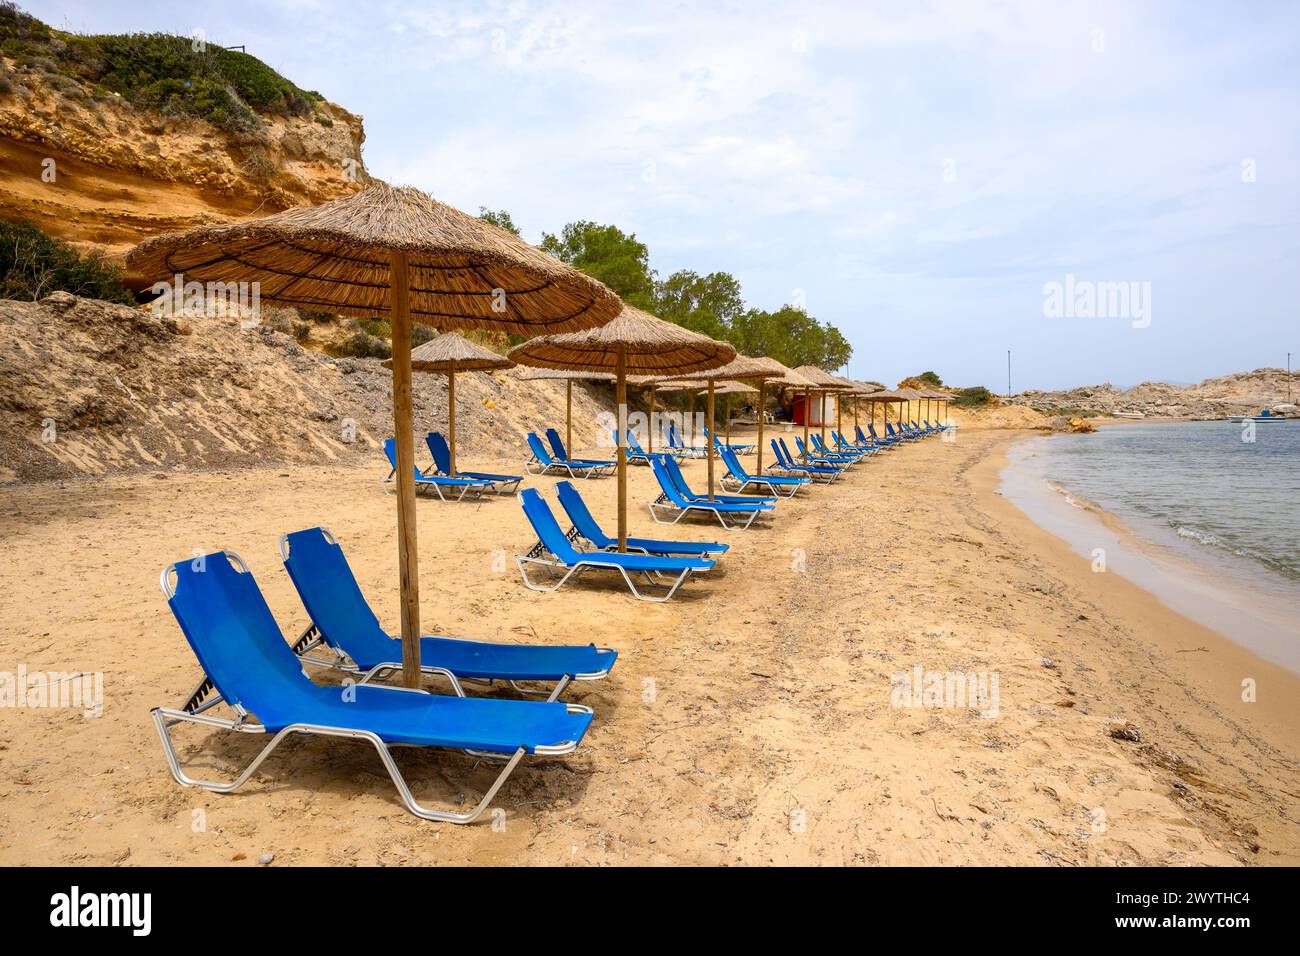 Sun loungers on sandy Limnionas beach. Kos island, Dodecanese, Greece Stock Photo